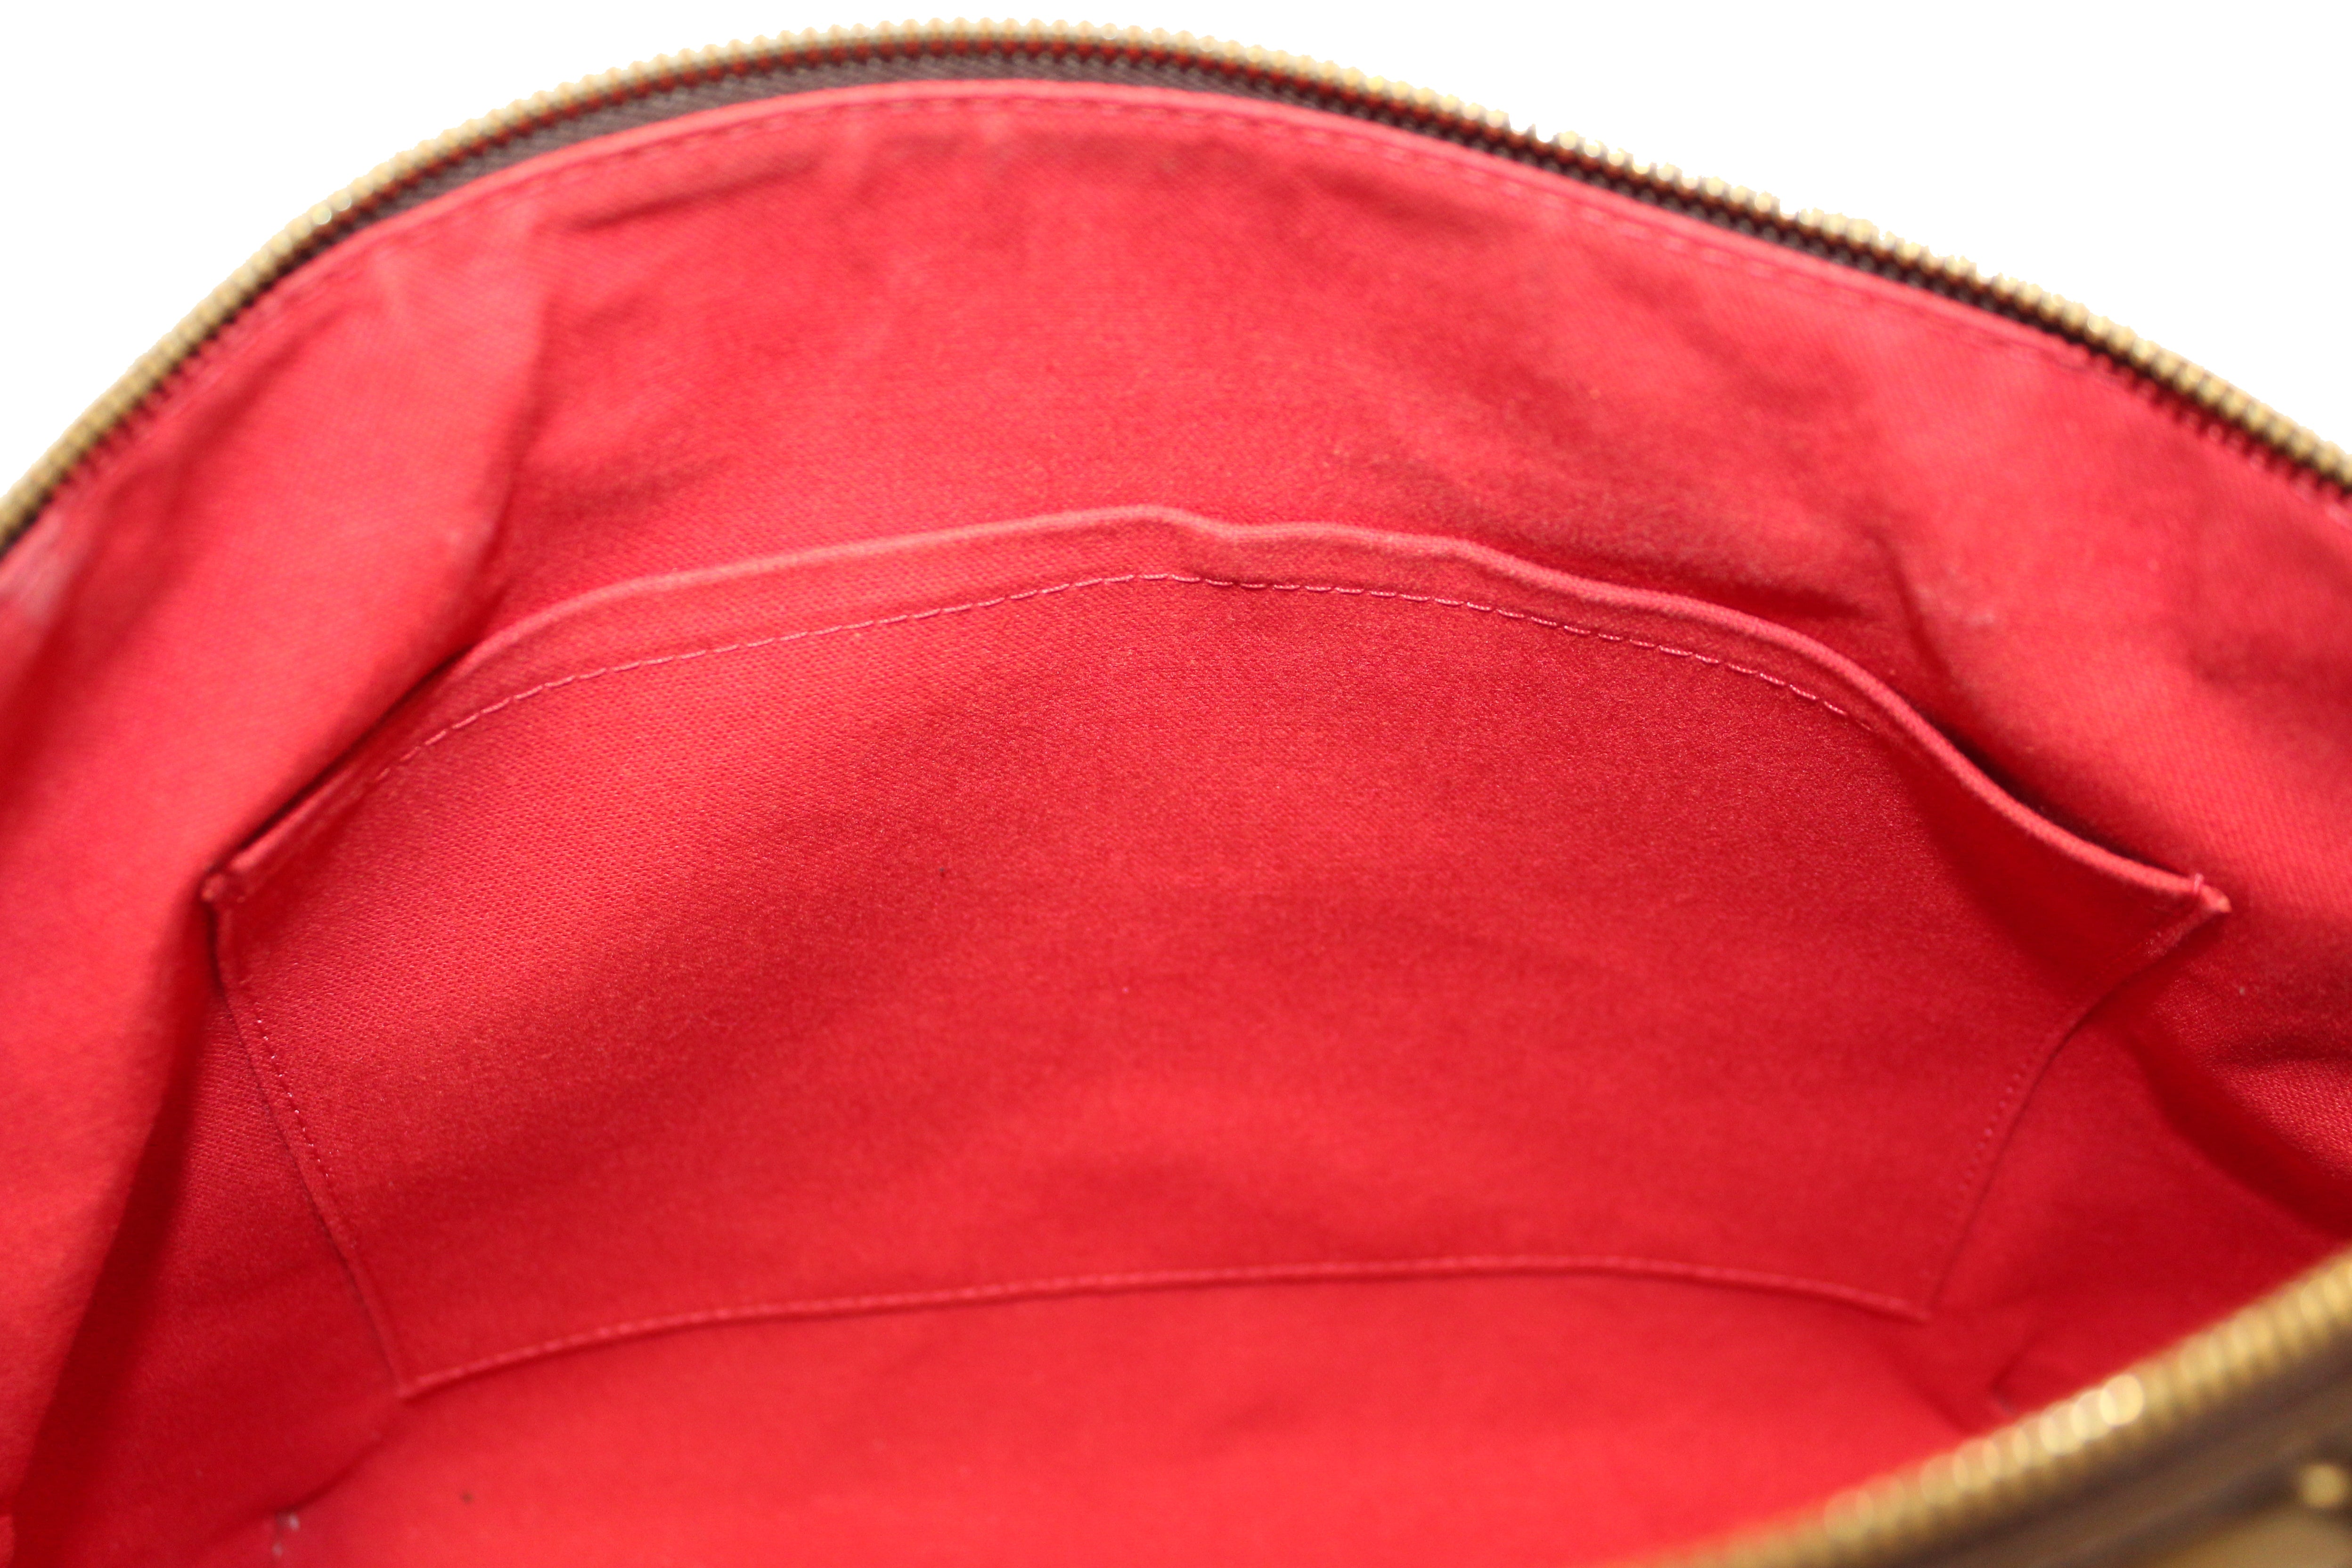 Authentic Louis Vuitton Damier Ebene Westminster PM Tote Shoulder Bag –  Paris Station Shop